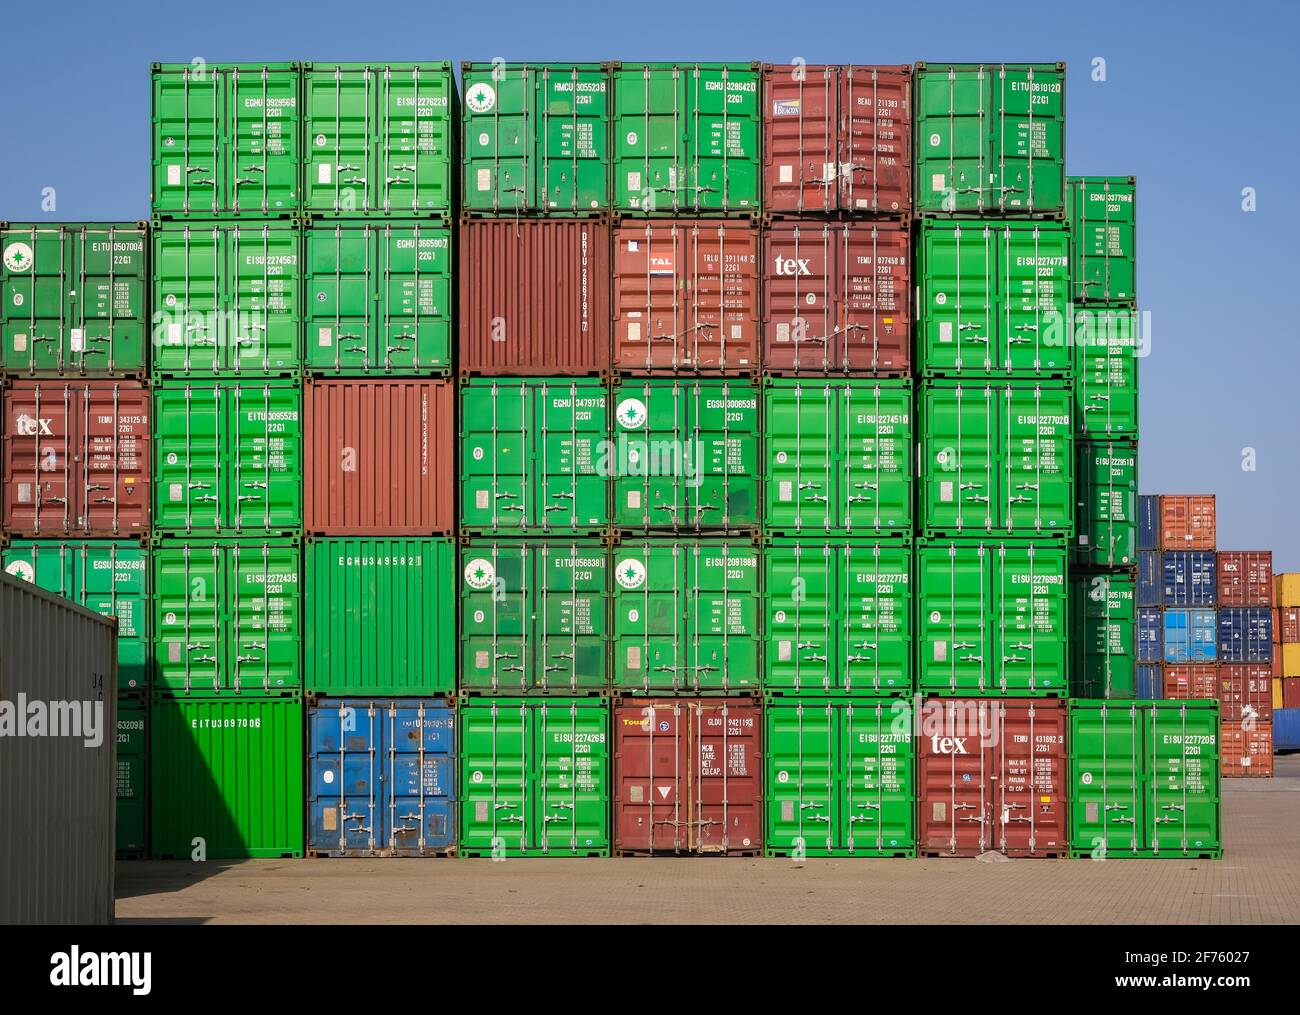 Duisburg, Ruhrgebiet, Nordrhein-Westfalen, Deutschland - Duisburger Hafen, Container am Containerterminal in Duisburg Ruhrort. Stockfoto